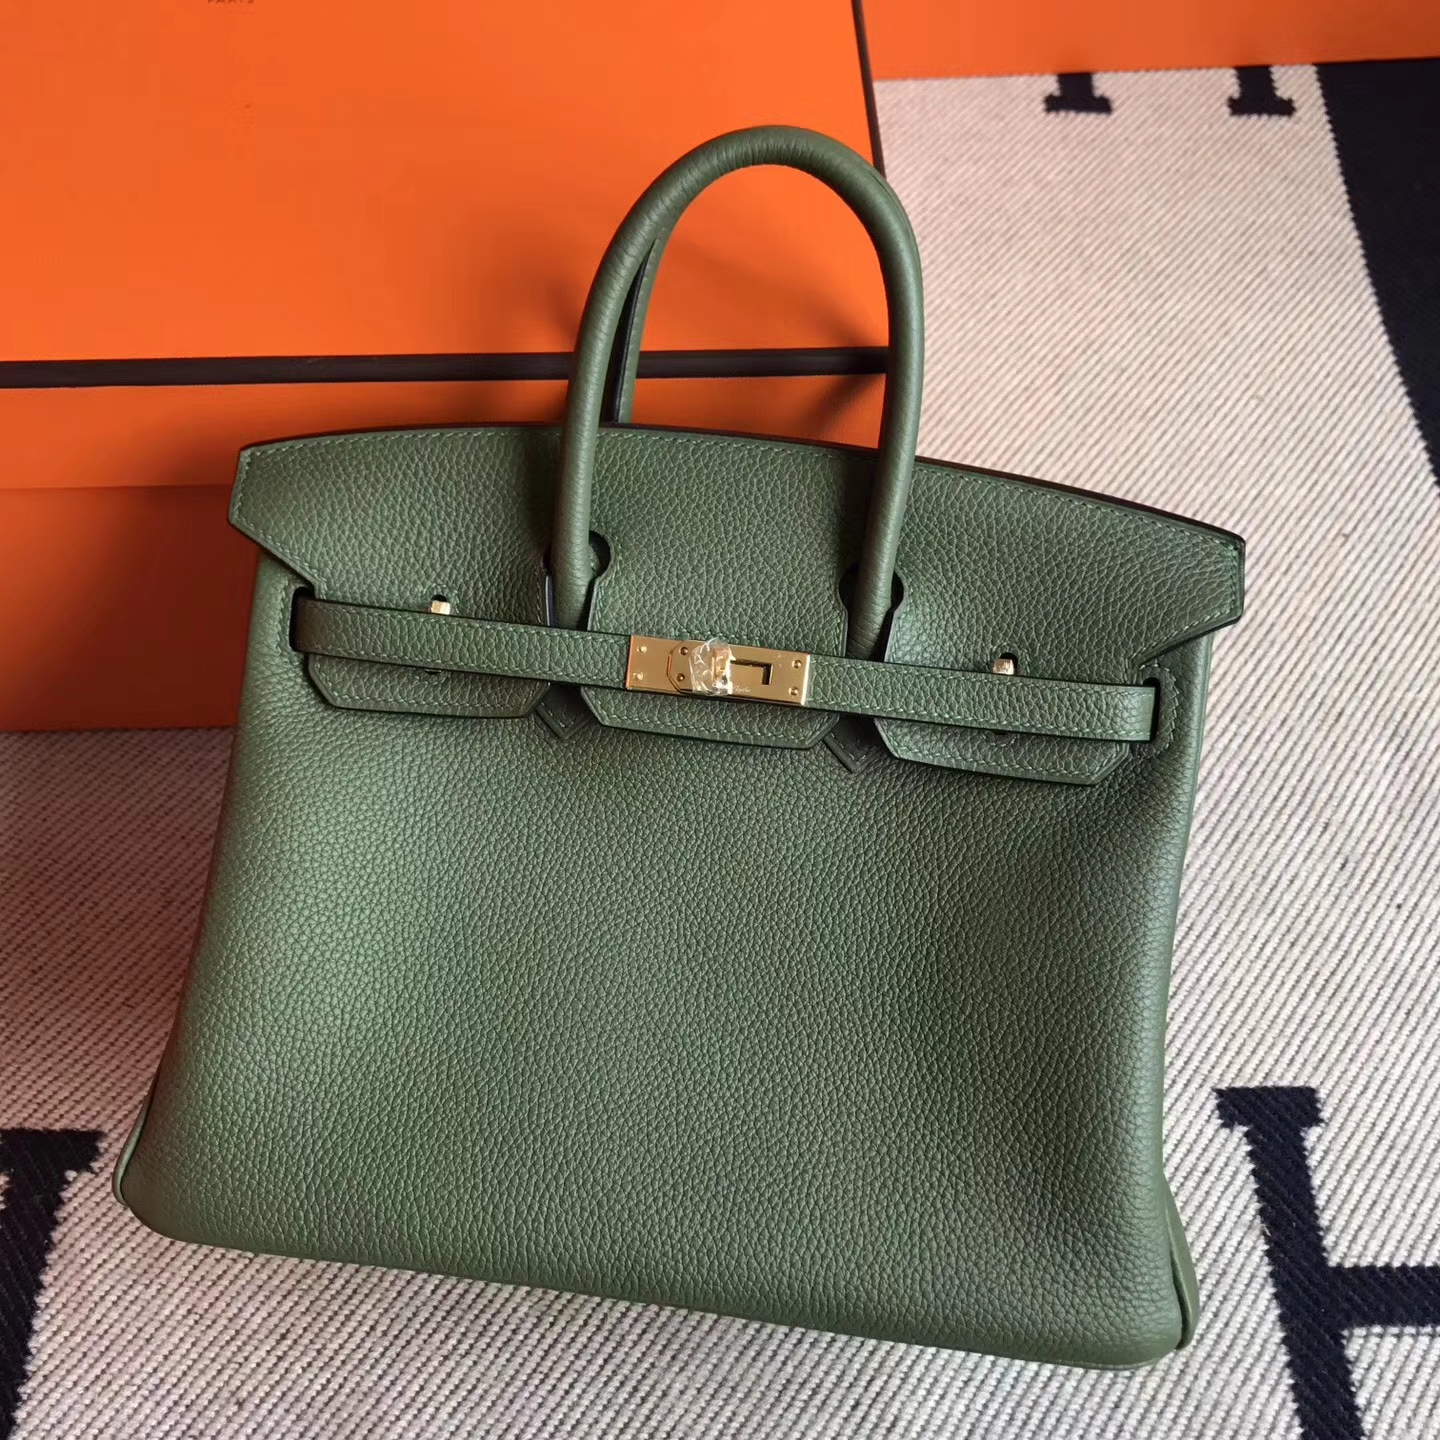 Elegant Hermes Bag V6 Canopee Green Togo Leather Birkin25cm Gold Hardware